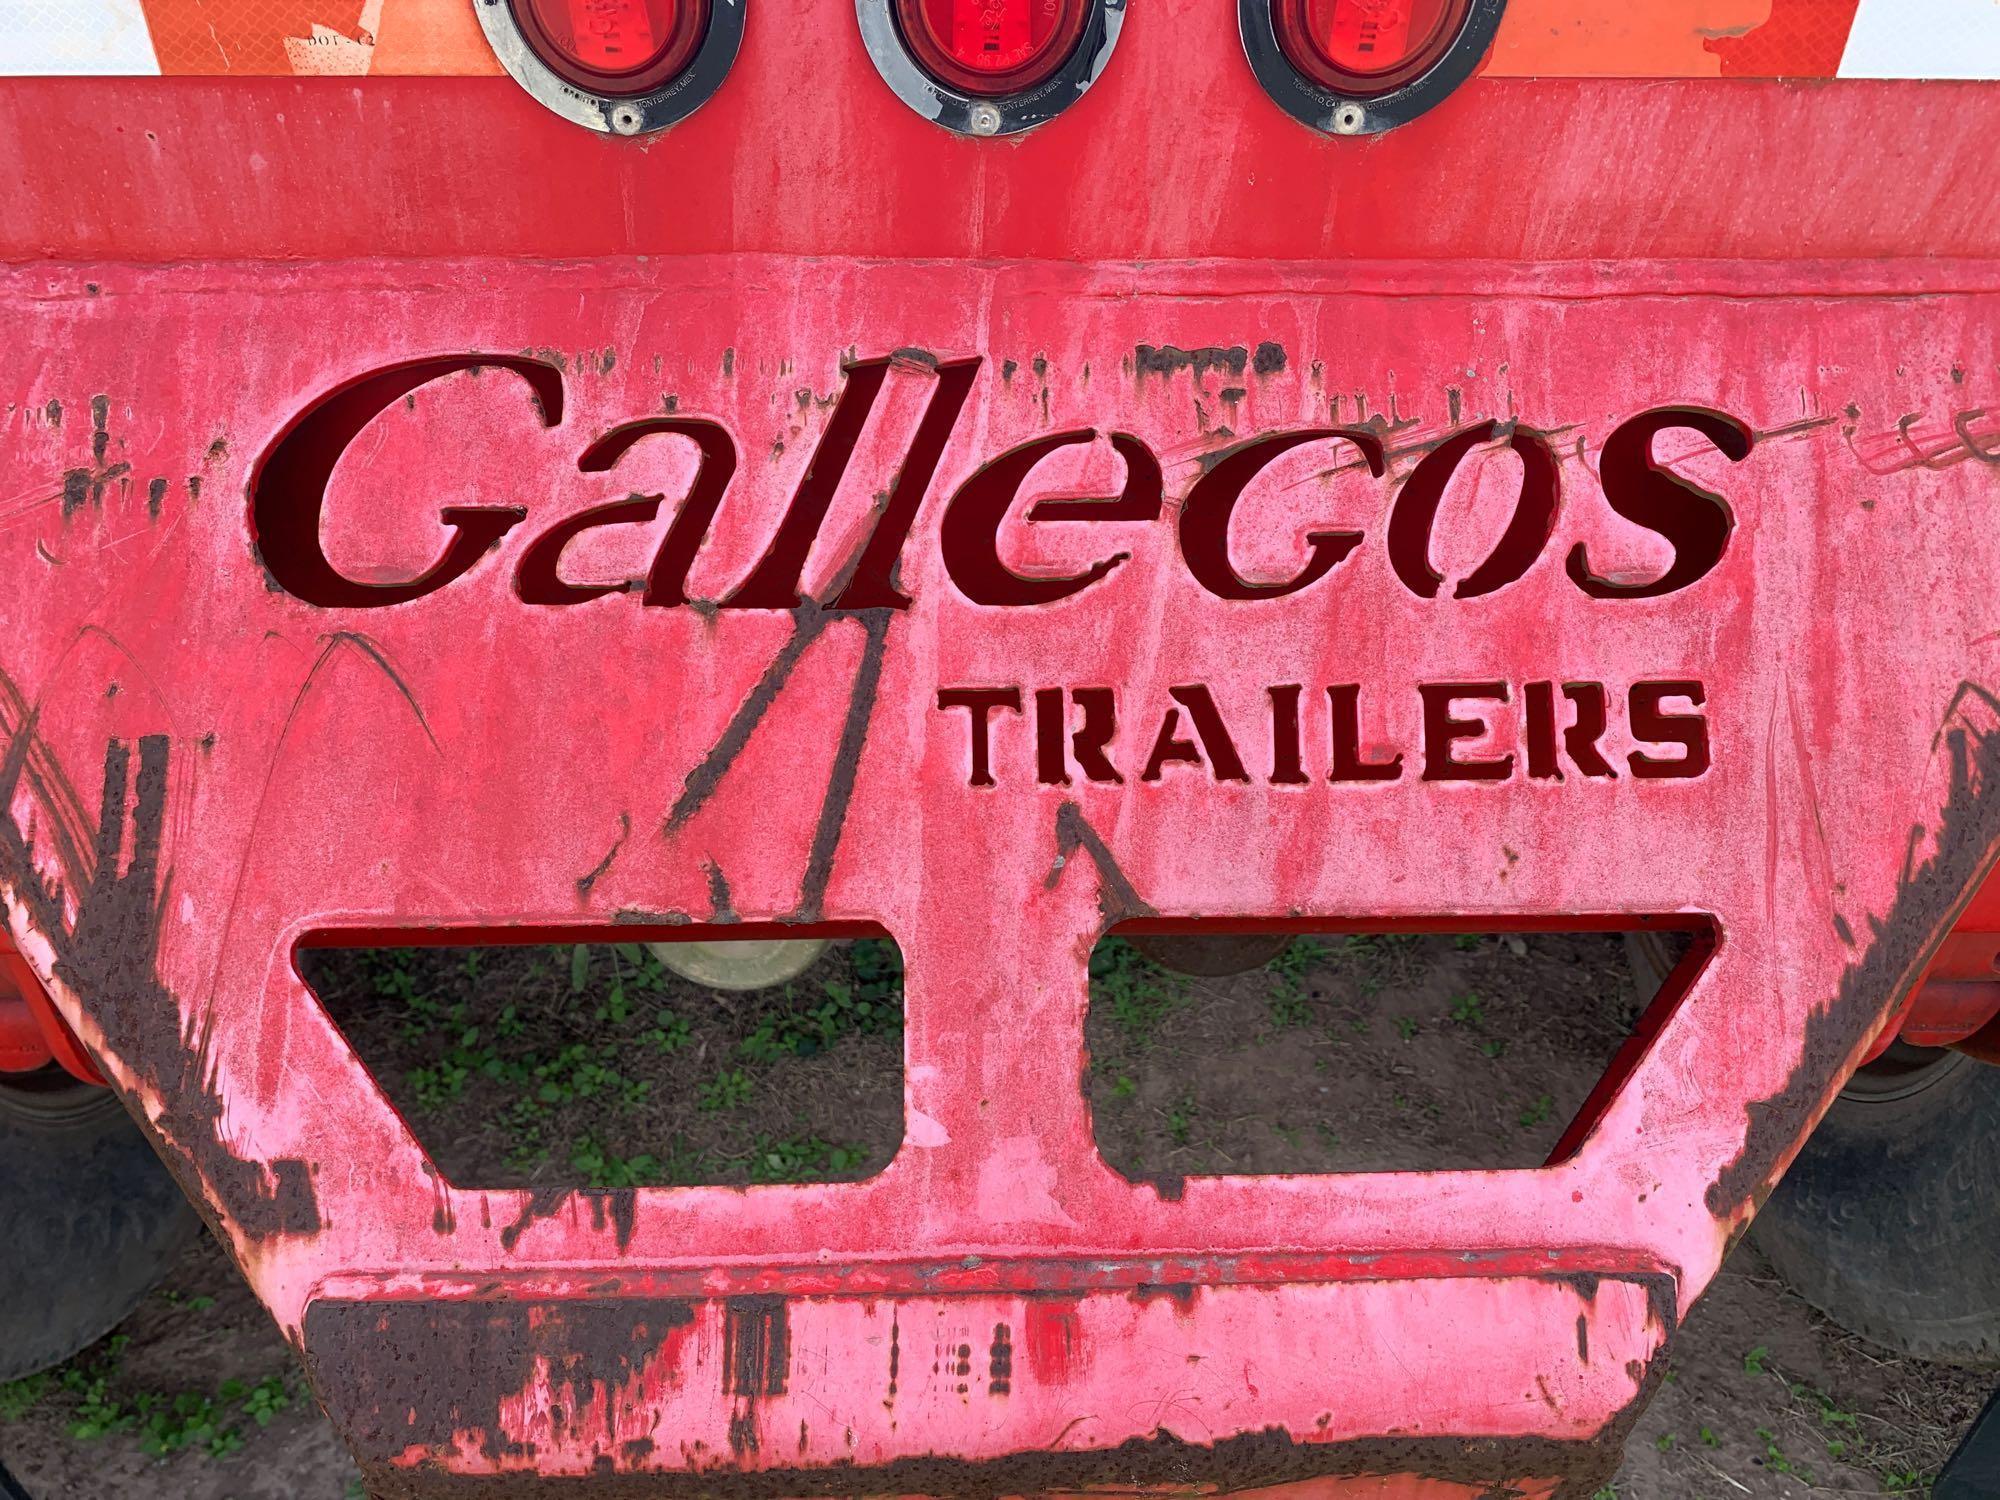 2008 Carrocerias Gallegos S.A. de C.V. Trailer, VIN # 3C92V40M38G039459